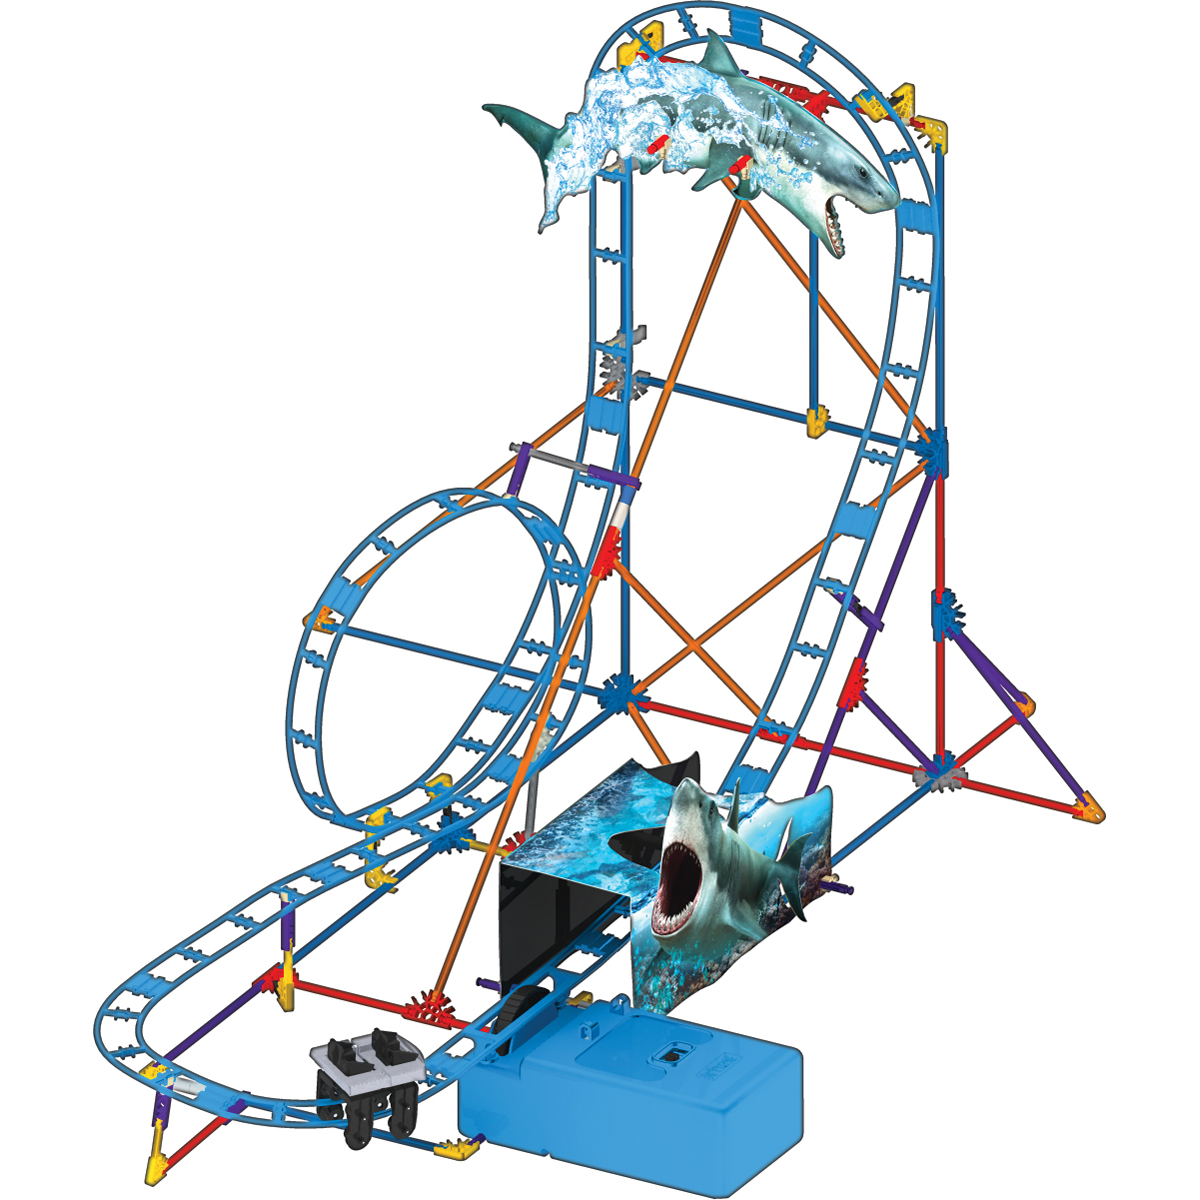 K'nex - Shark Attack Roller Coaster Building Set